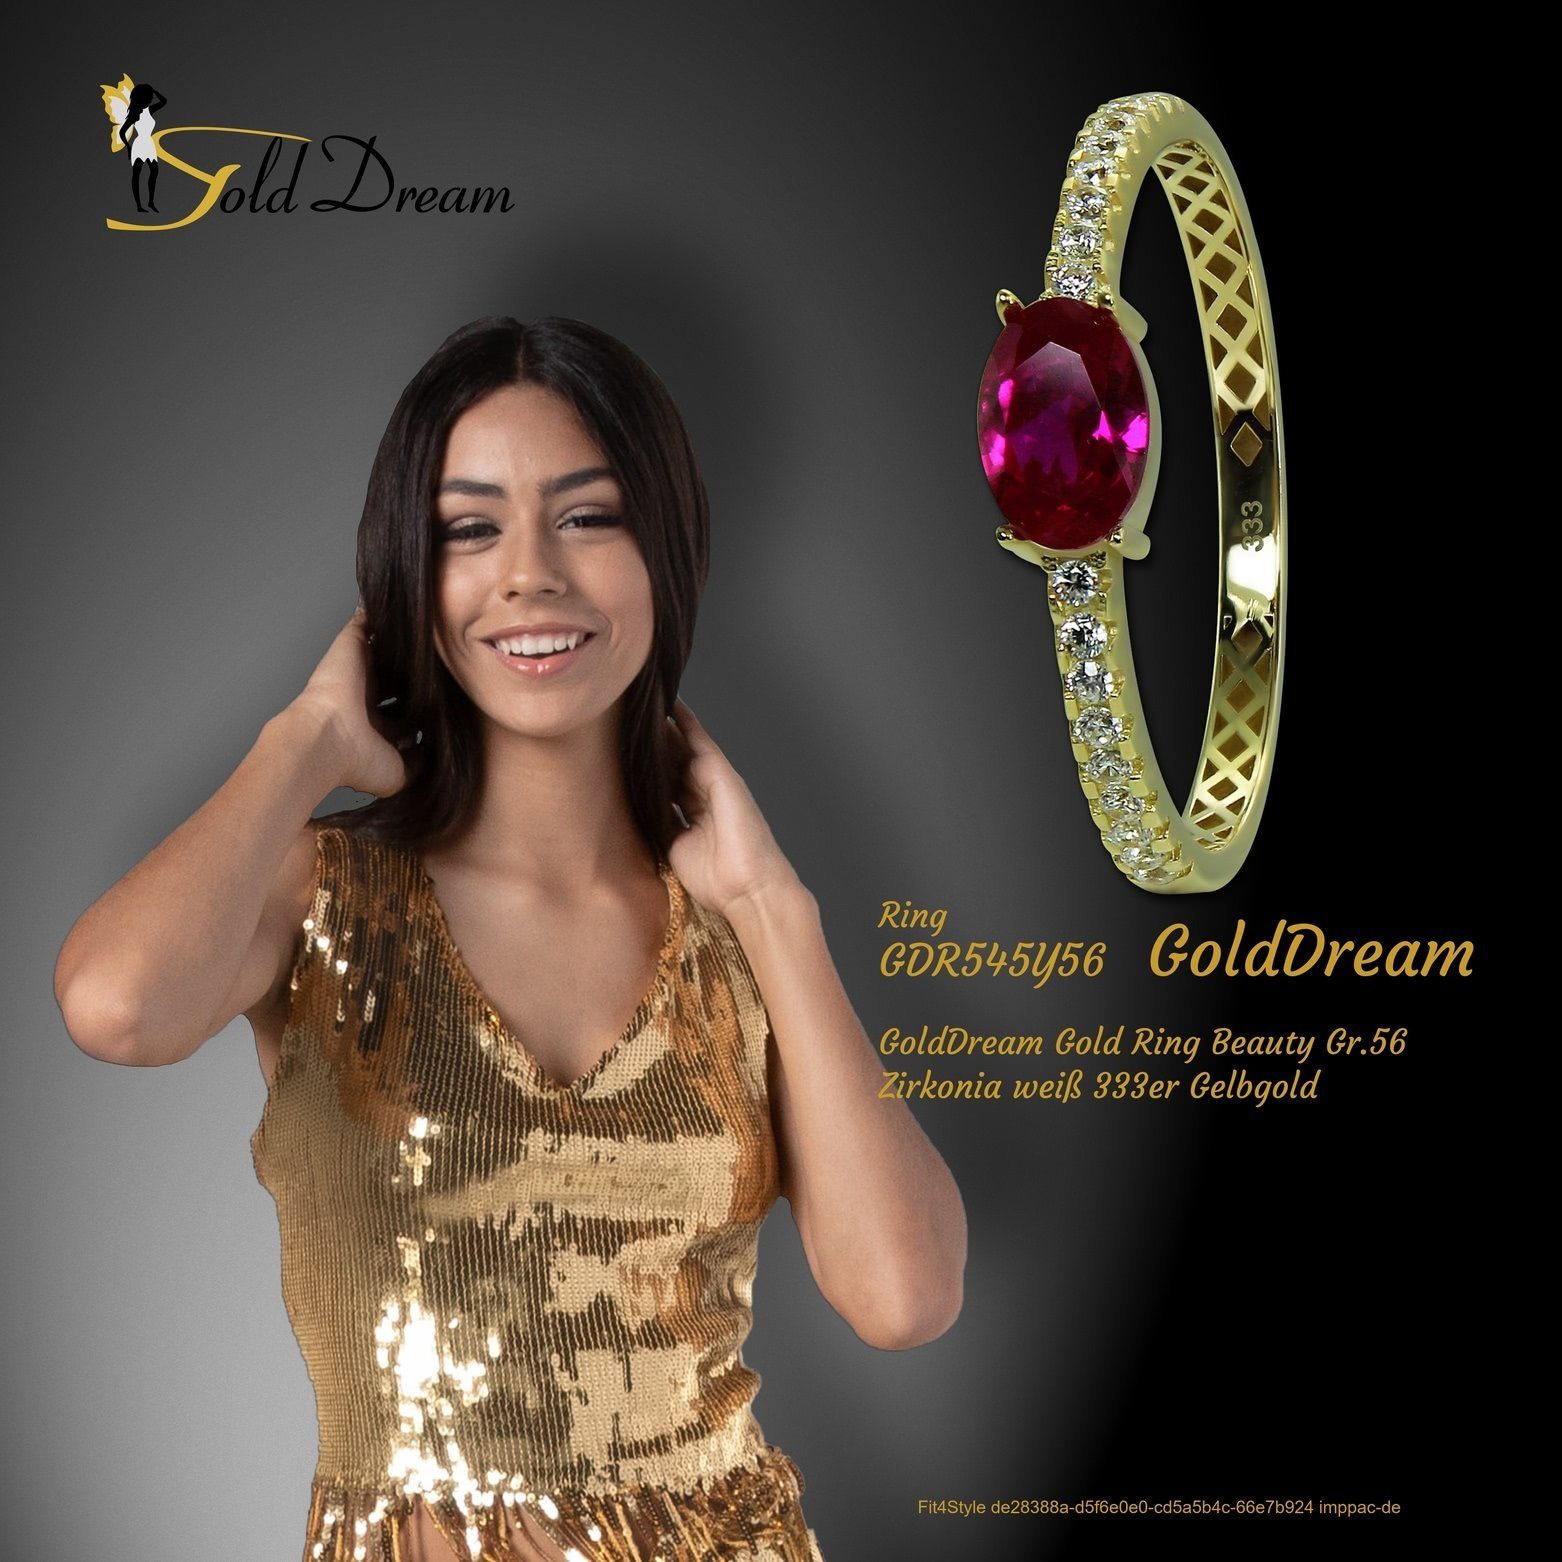 pink Beauty Ring Gold - 8 Gr.56 GoldDream (Fingerring), Karat, Gelbgold GoldDream Goldring Beauty Farbe: Damen 333 gold, weiß, Ring